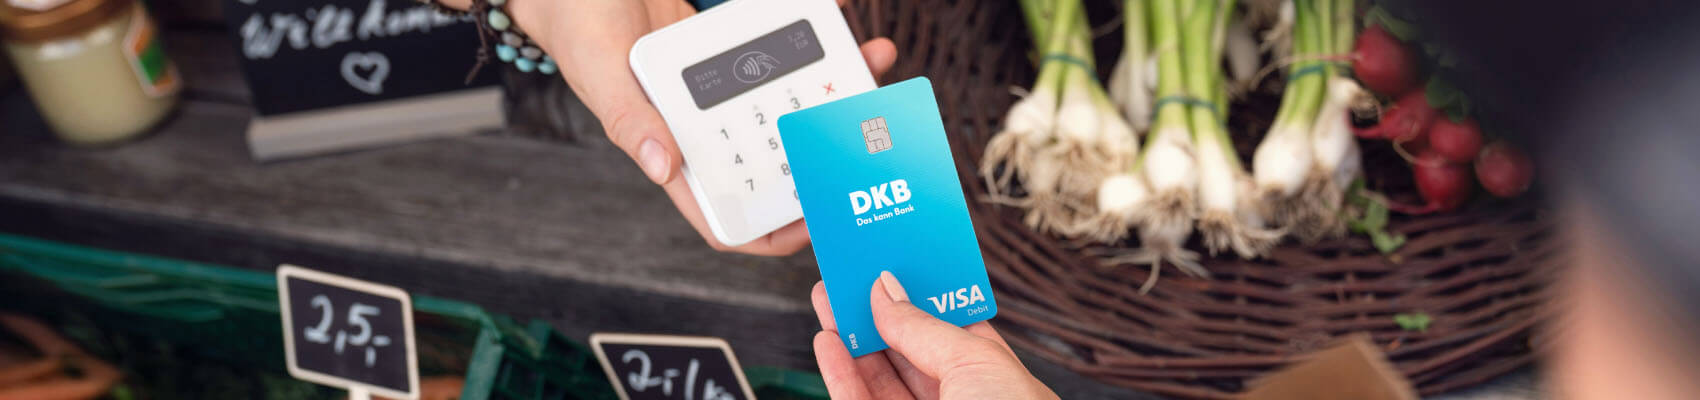 Otwarcie konta w banku DKB w Niemczech